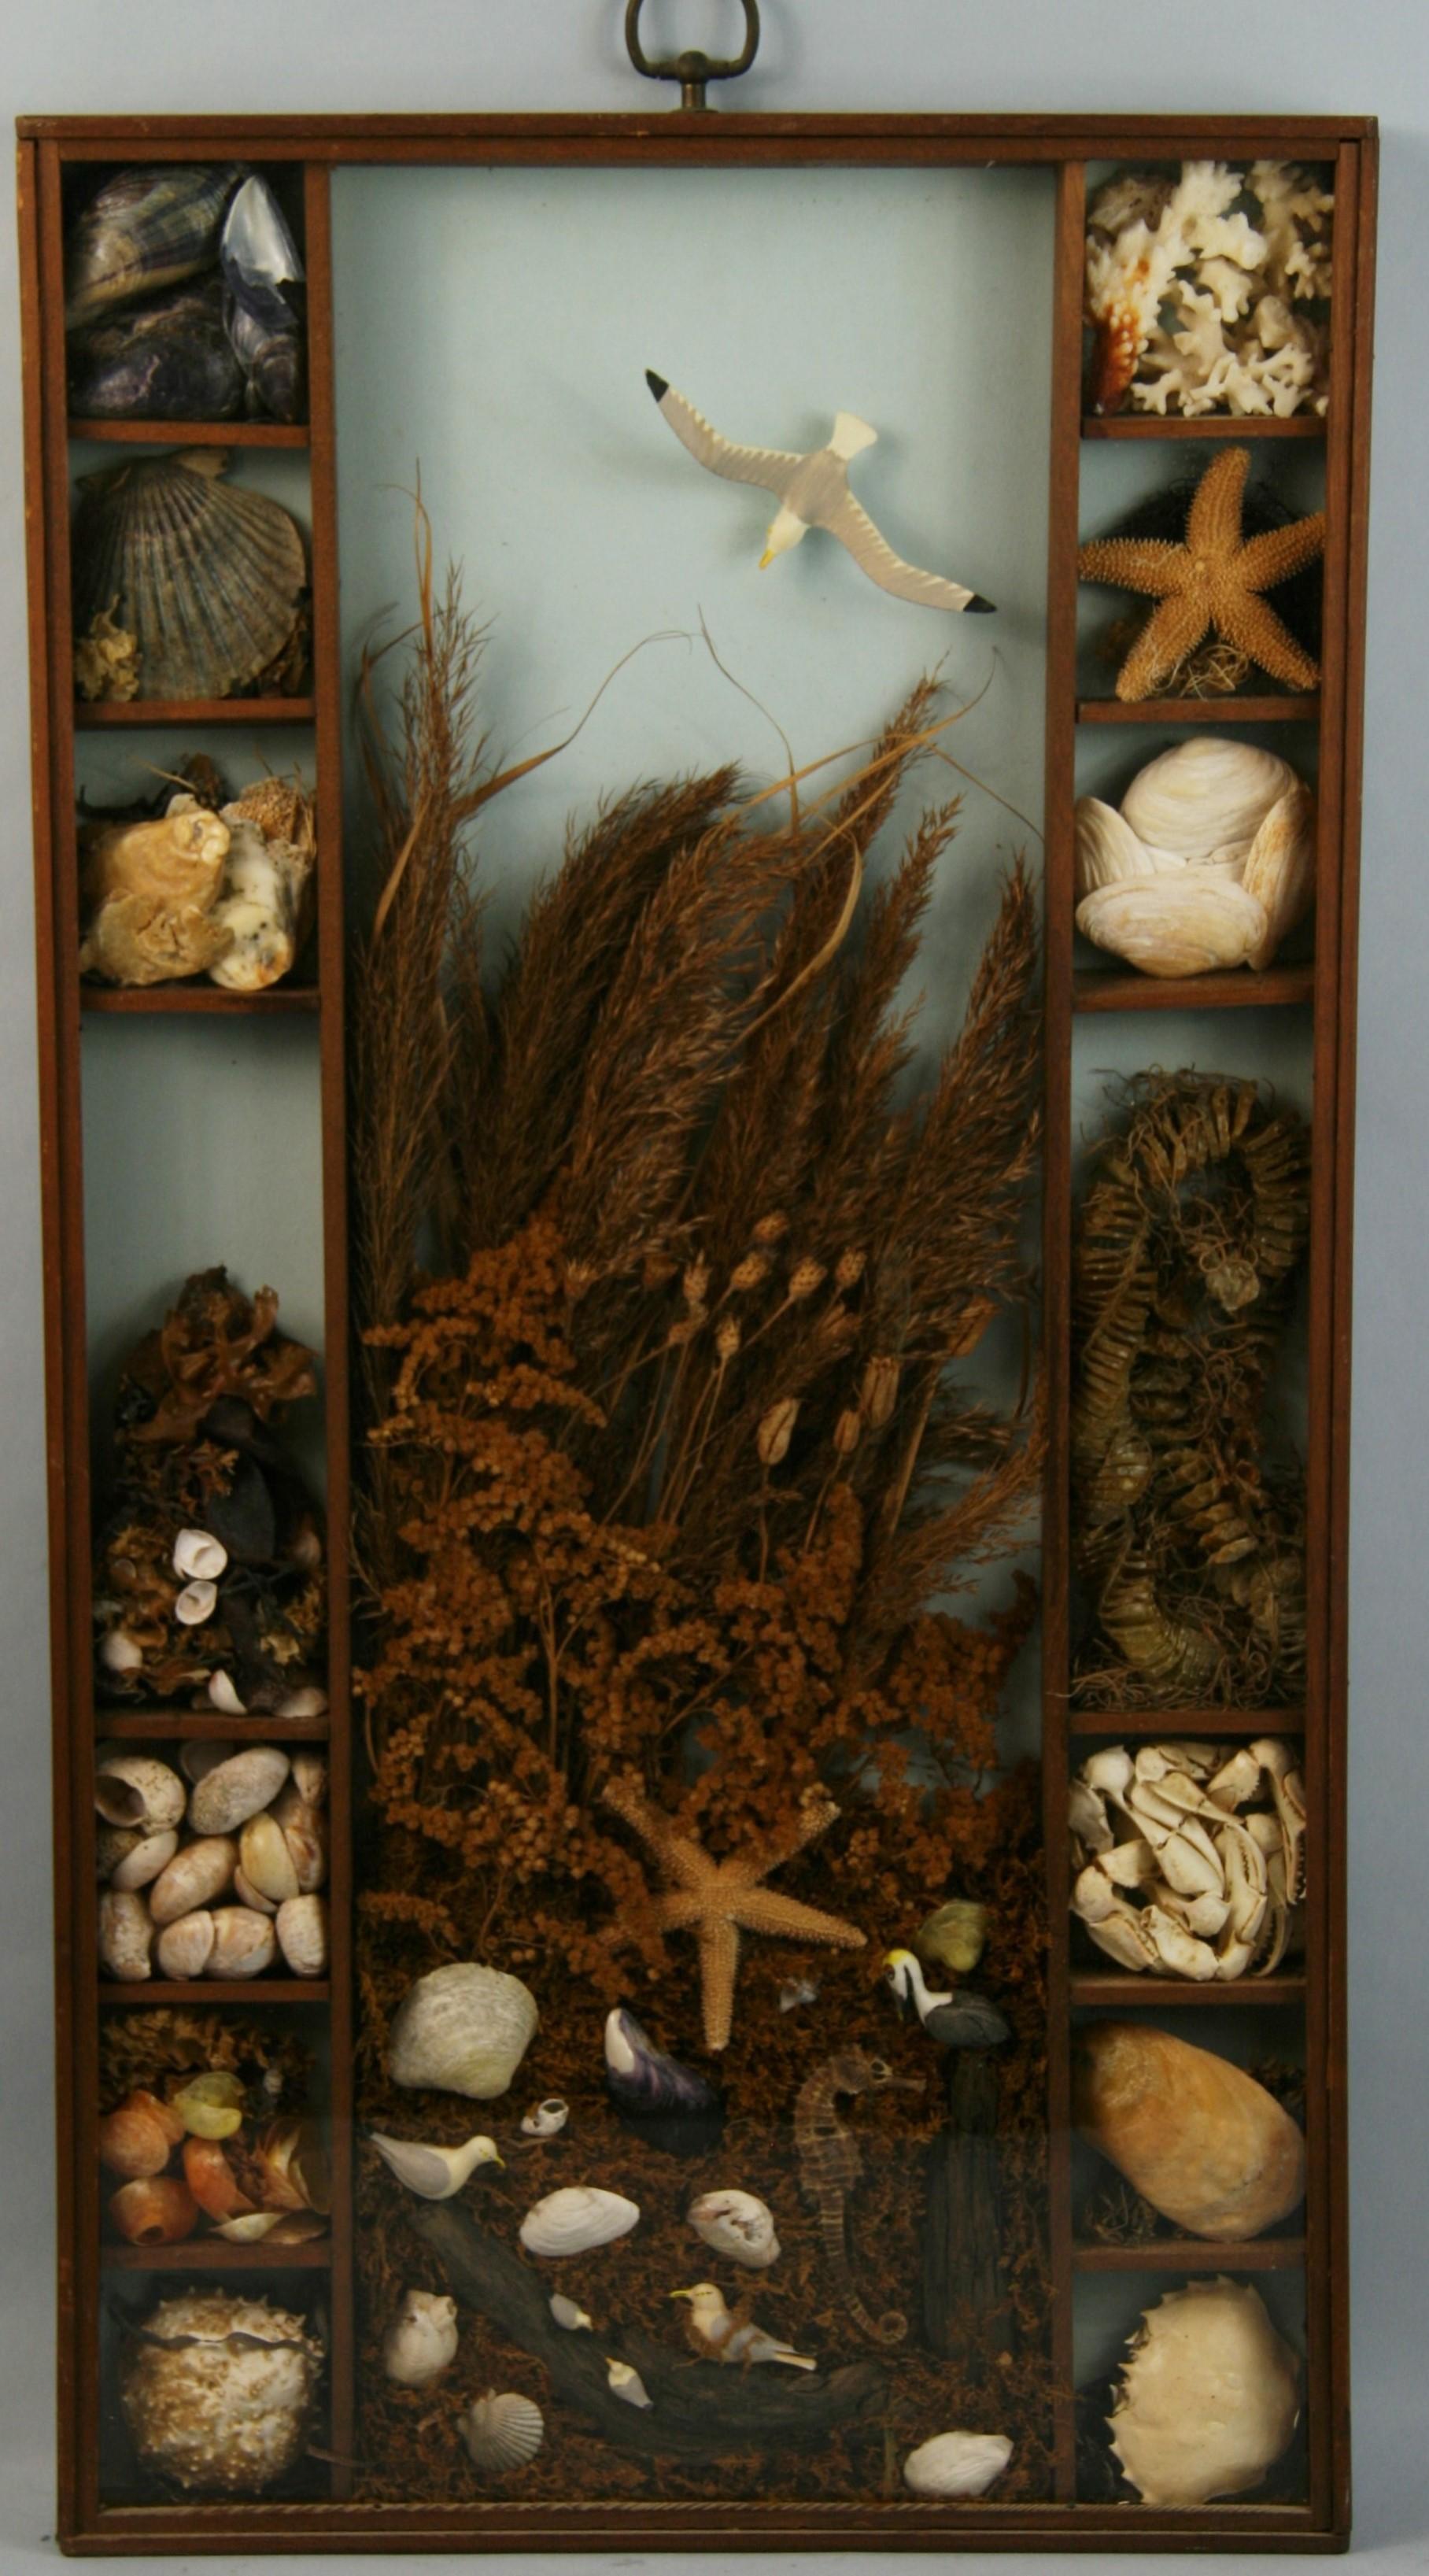 3-715 Wunderschönes Meeresdiorama mit Muscheln, verschiedenen Krustentieren, Seepferdchen und Seesternen in einem Nussbaumrahmen unter Glas.
Aufhängering aus Messing